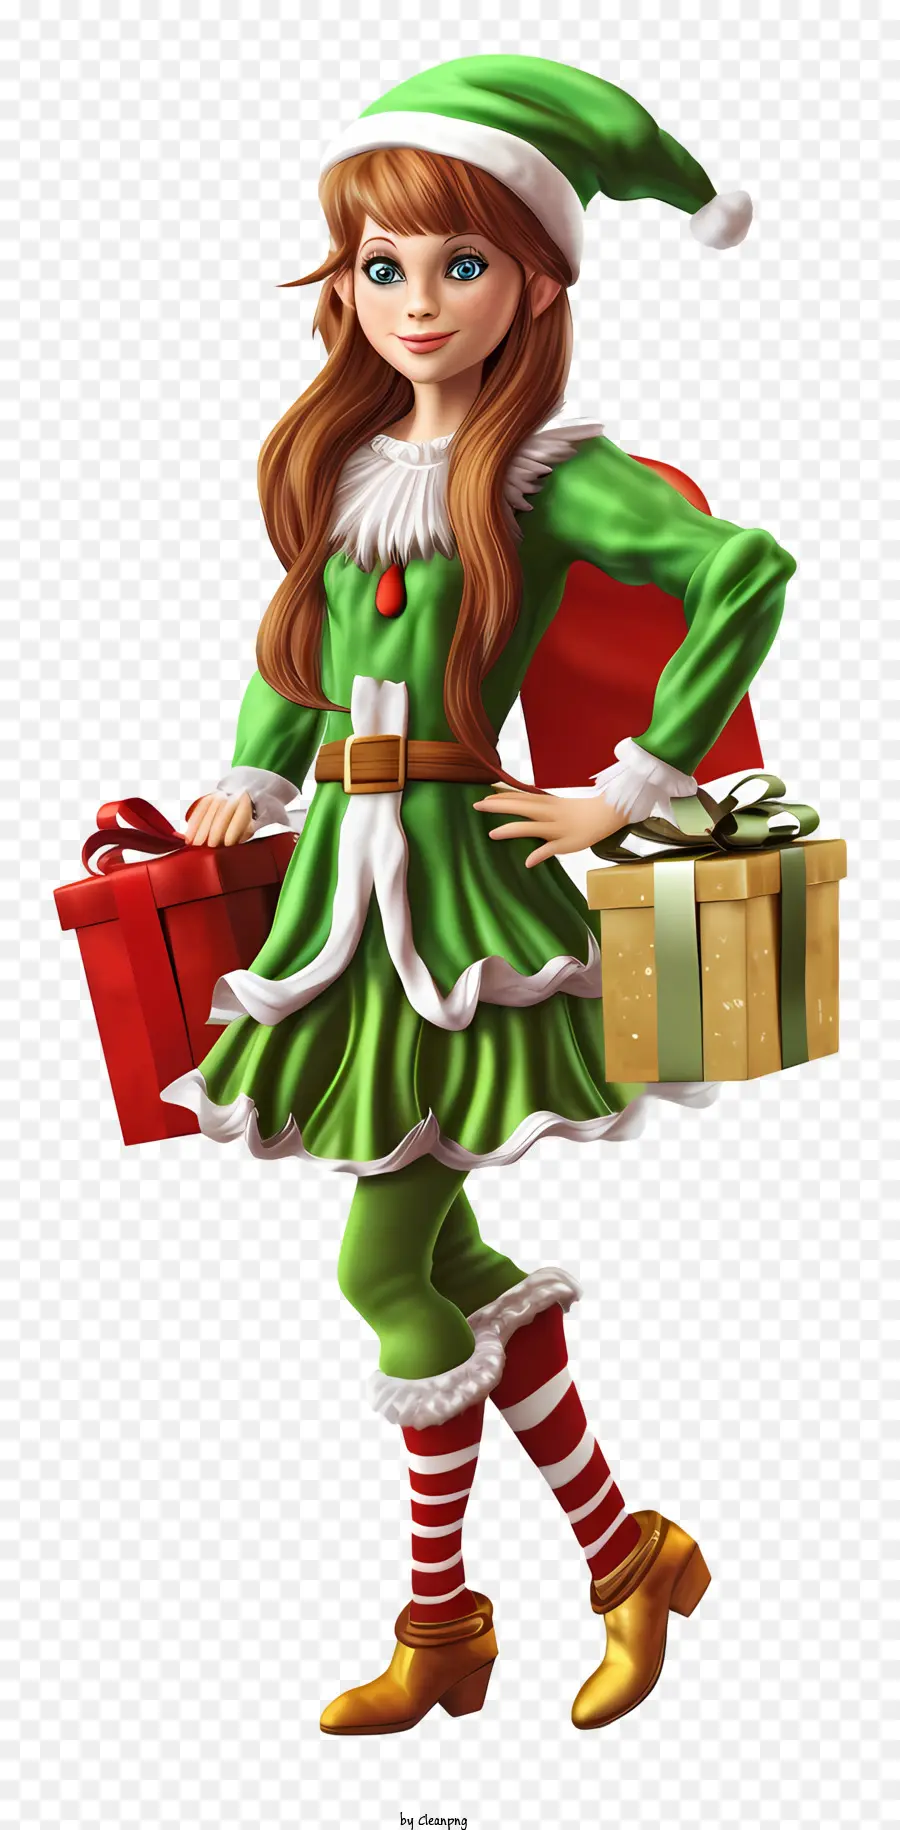 scatola regalo - La ragazza sorridente indossa un outfit verde e rosso